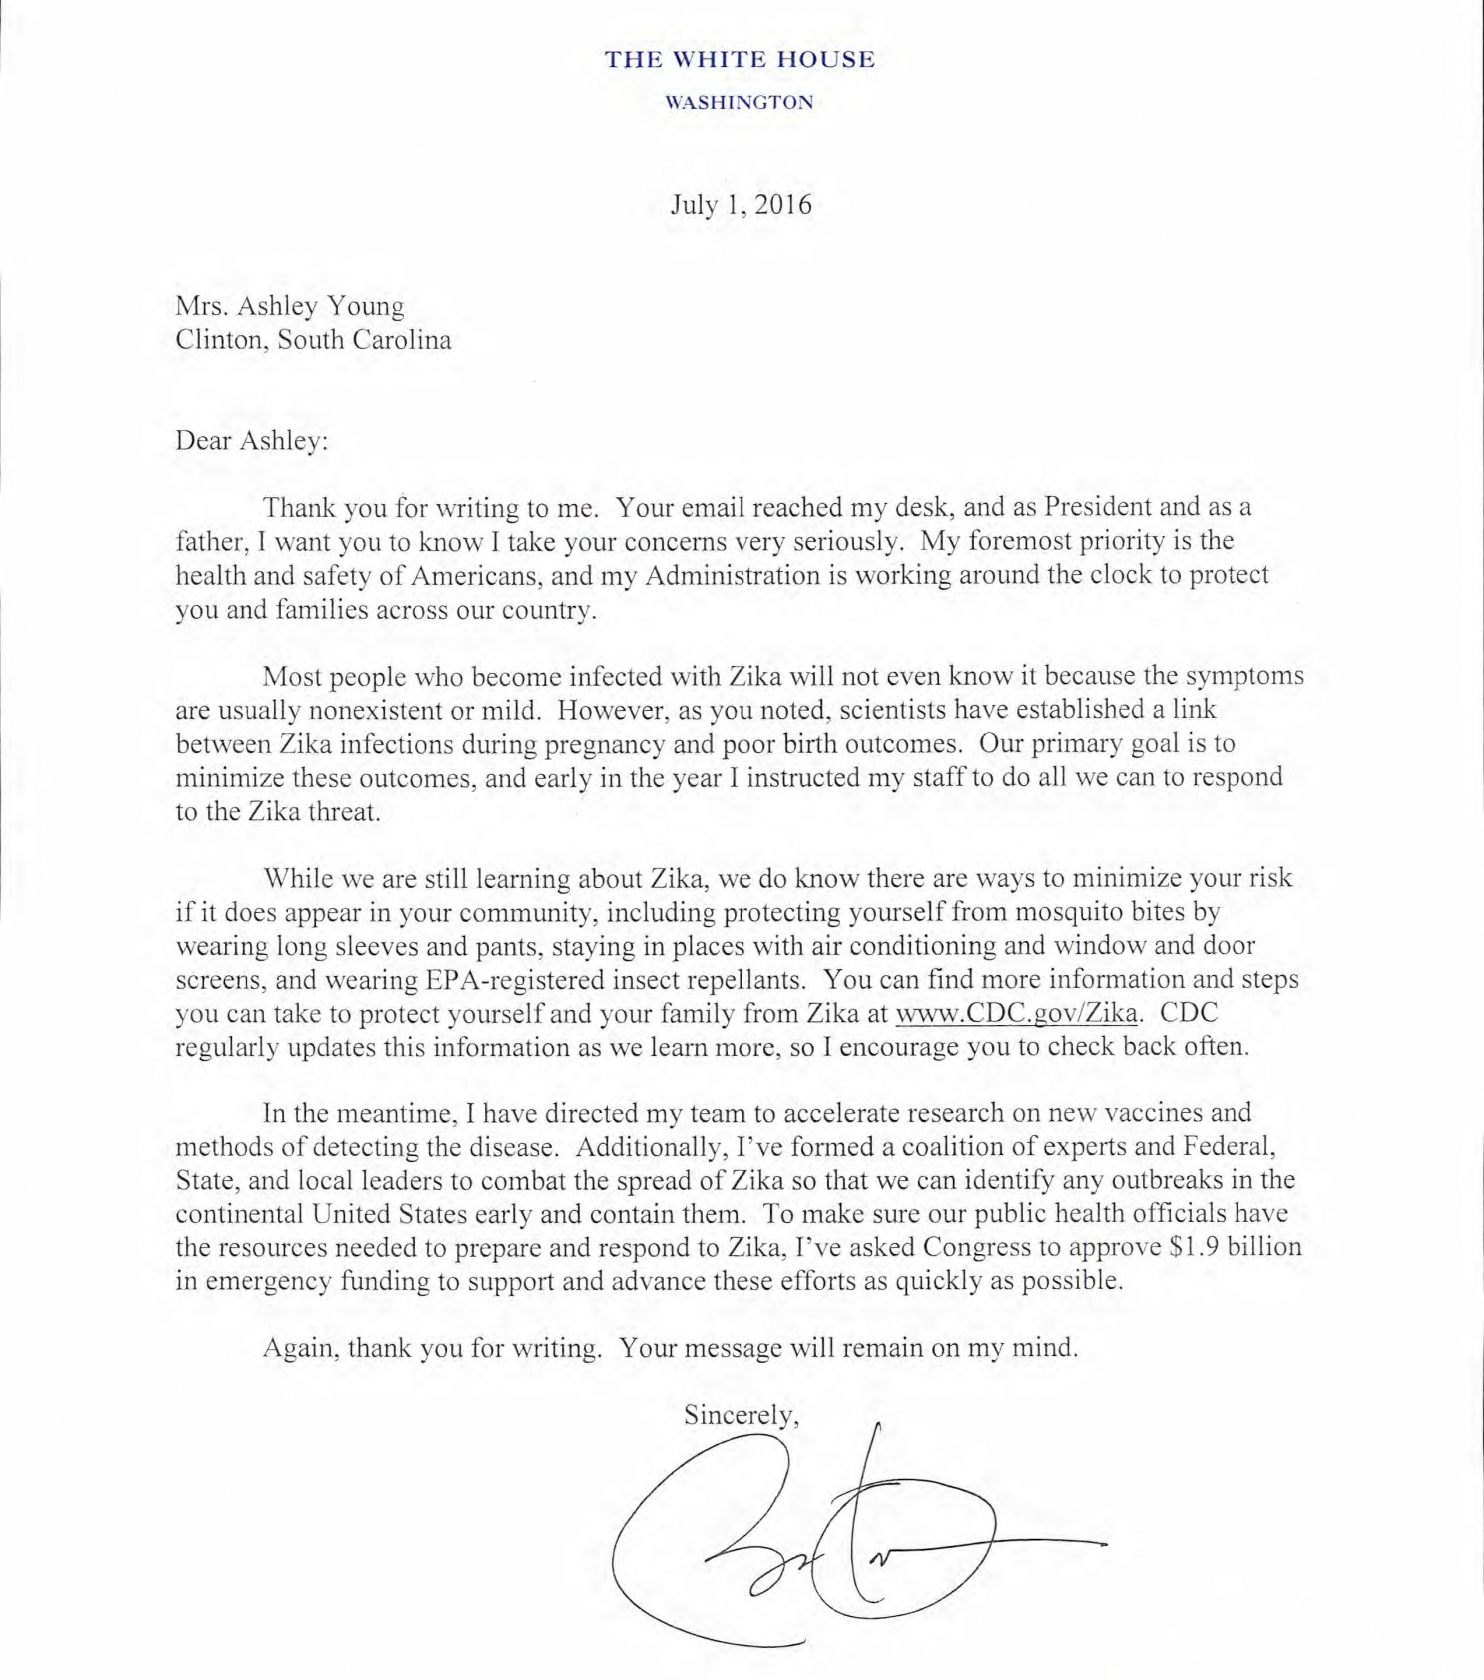 President Obama's response to Ashley on Zika